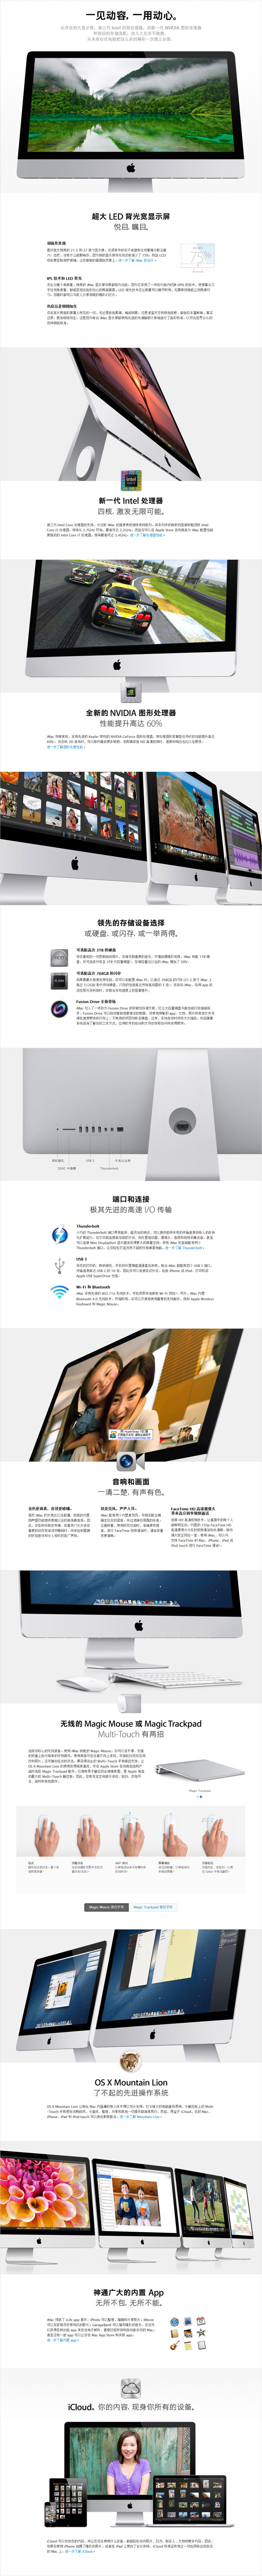 优易租带来最新iMac 442CH/A苹果电脑出租价格,图片,参数,详情信息